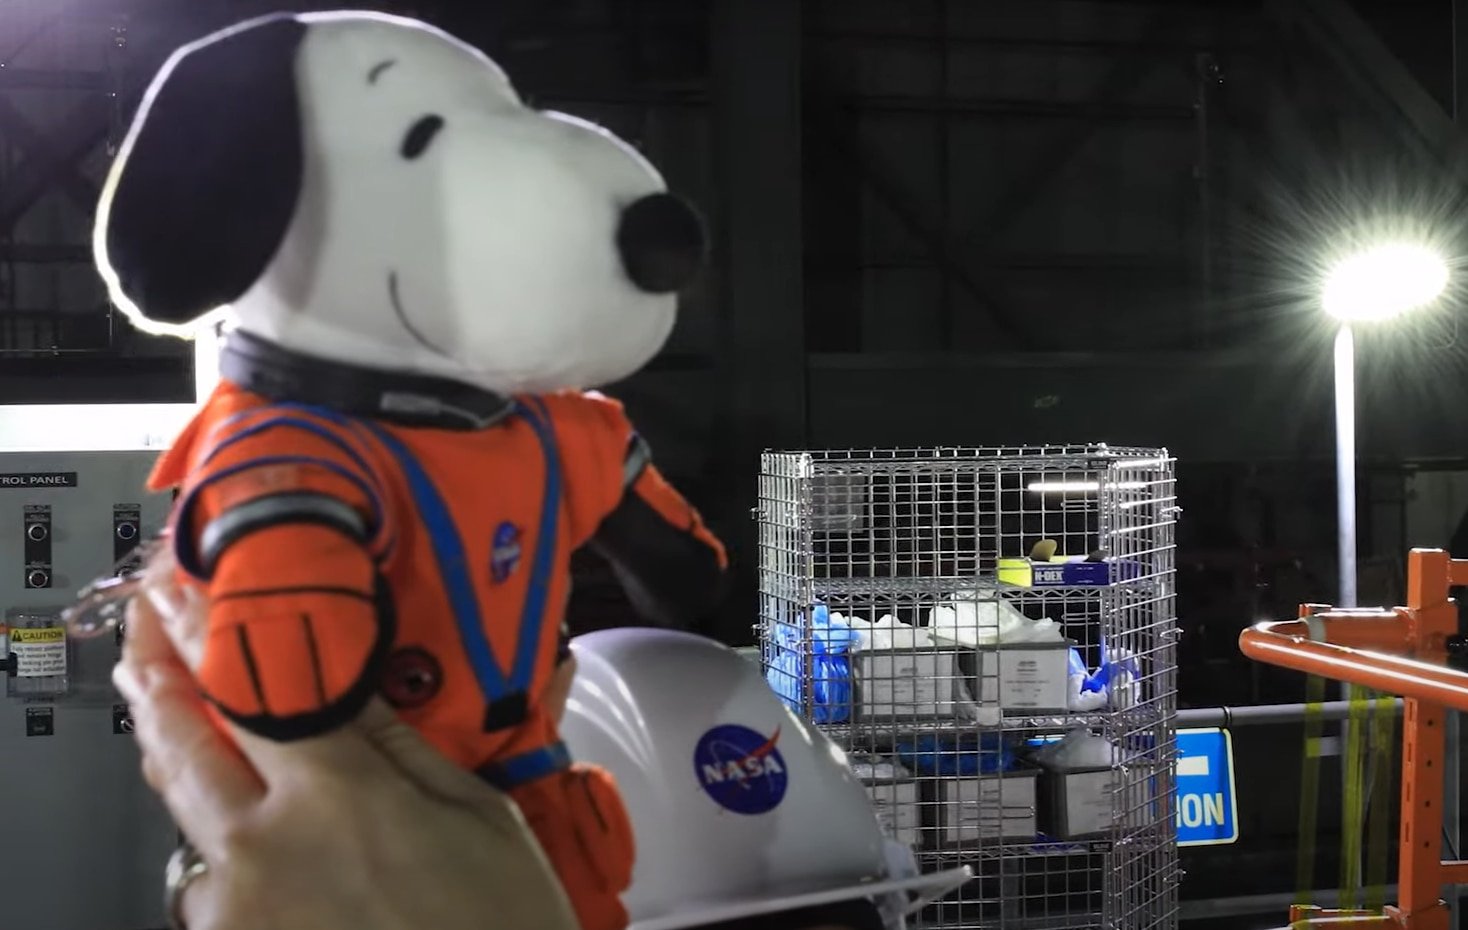 Snoopy viajará a la Luna como parte de la misión Artemis I: estas son las razones